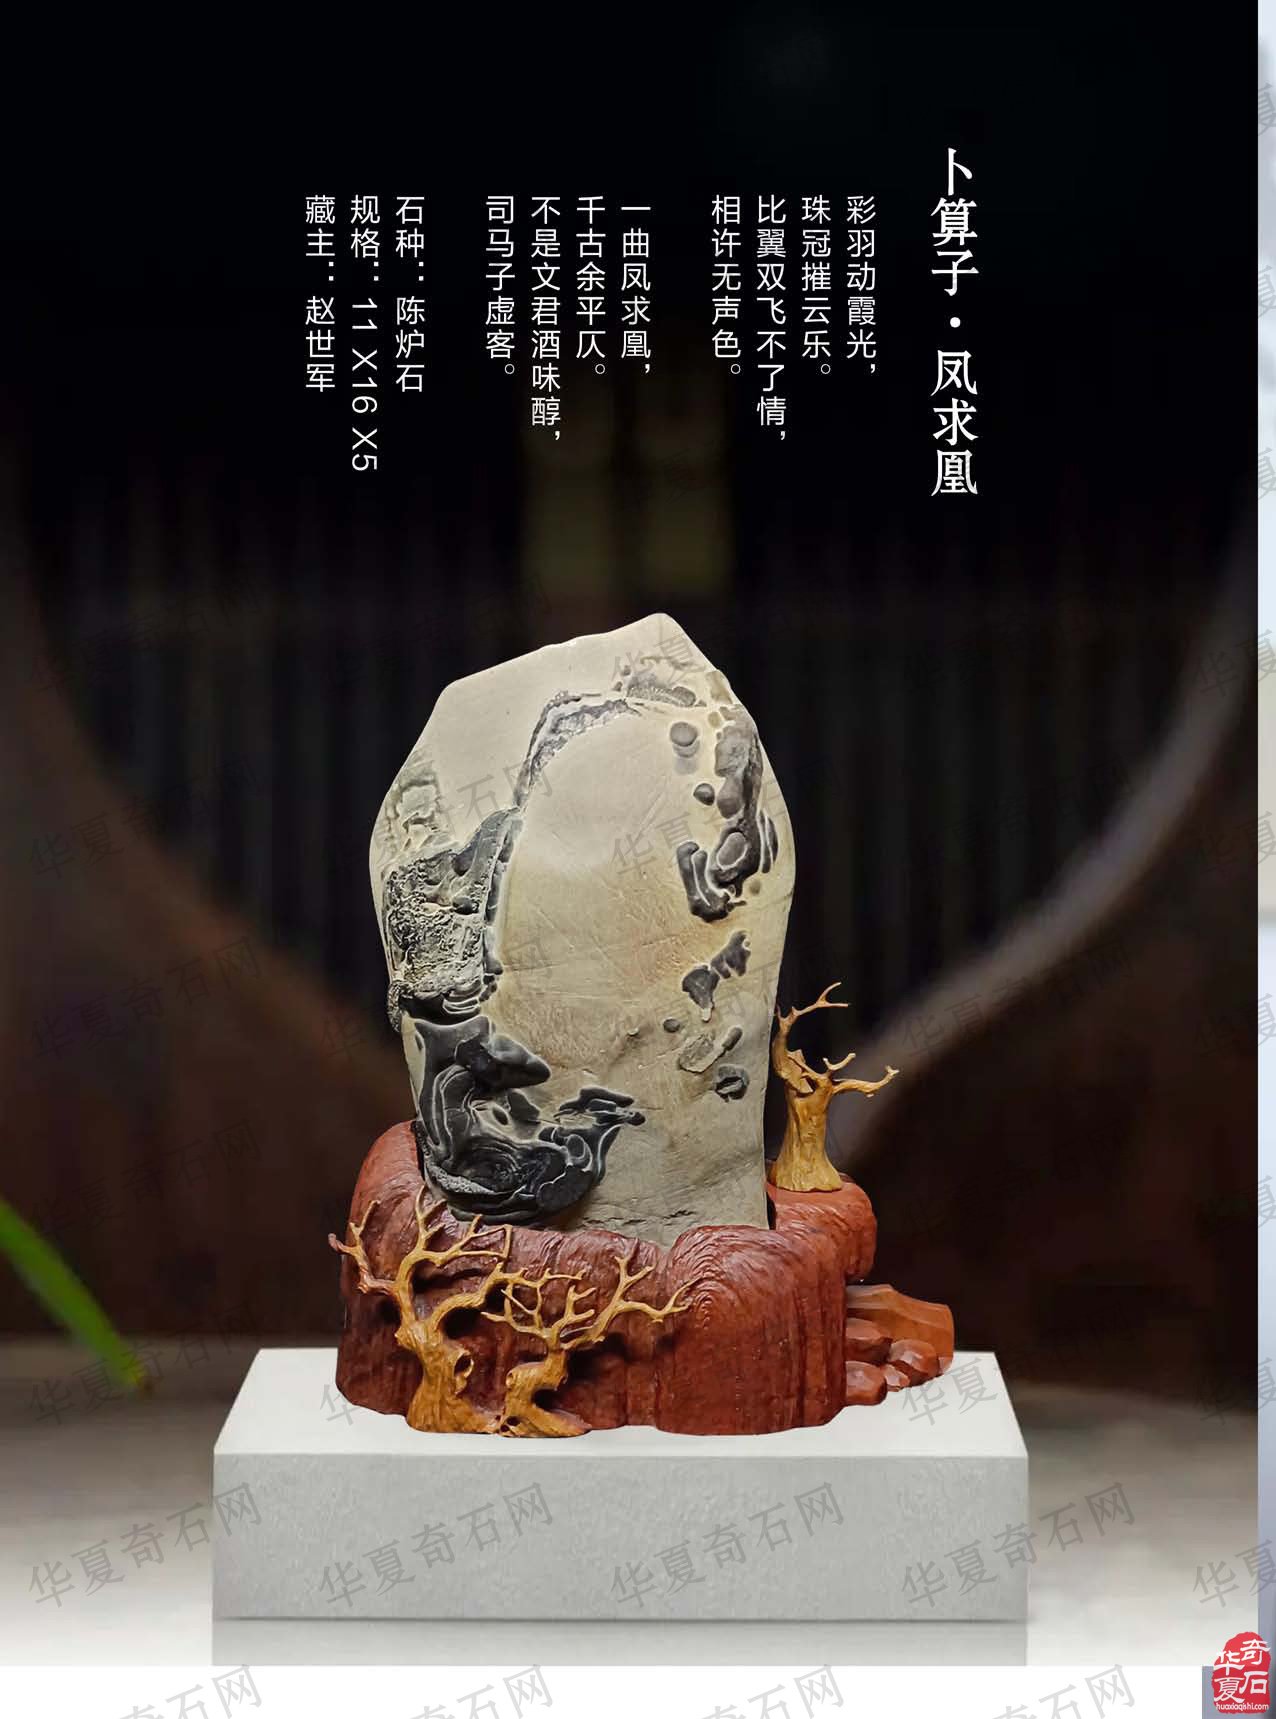 欣赏《于公赏石》杂志推介的大秦奇石艺术馆